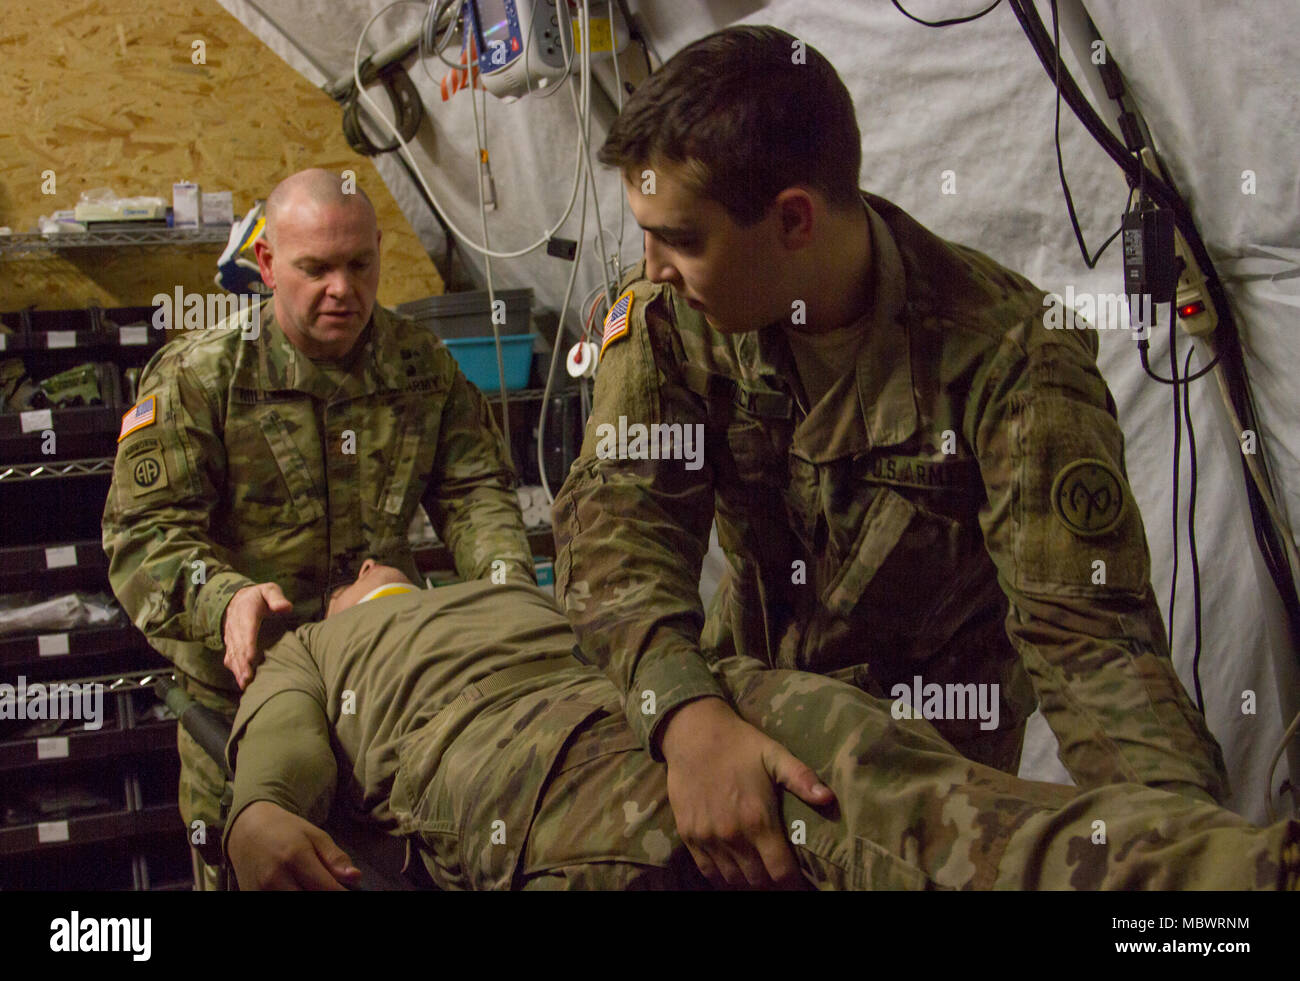 Yavoriv, Ukraine - 27 Infantry Brigade Combat Team Soldaten zugewiesen, die der Gemeinsamen multinationalen Ausbildung Gruppe - Ukraine (JMTG-U) nahmen an einem mascal Übung hier 14.01.12. Die Übung, die entworfen war, um ein Fahrzeug Kollision zu ähneln, wurde verwendet, um die JMTG-U der Medizinischen Sektion Bereitschaft und Fähigkeiten testen. Während der Übung die Mediziner, dass geantwortet hatte, triage und simulierte Opfer zu behandeln, bevor sie den Transport der Truppe Medizinische Klinik zur weiteren Pflege. (U.S. Armee Foto von Sgt. Alexander Rektor) Stockfoto